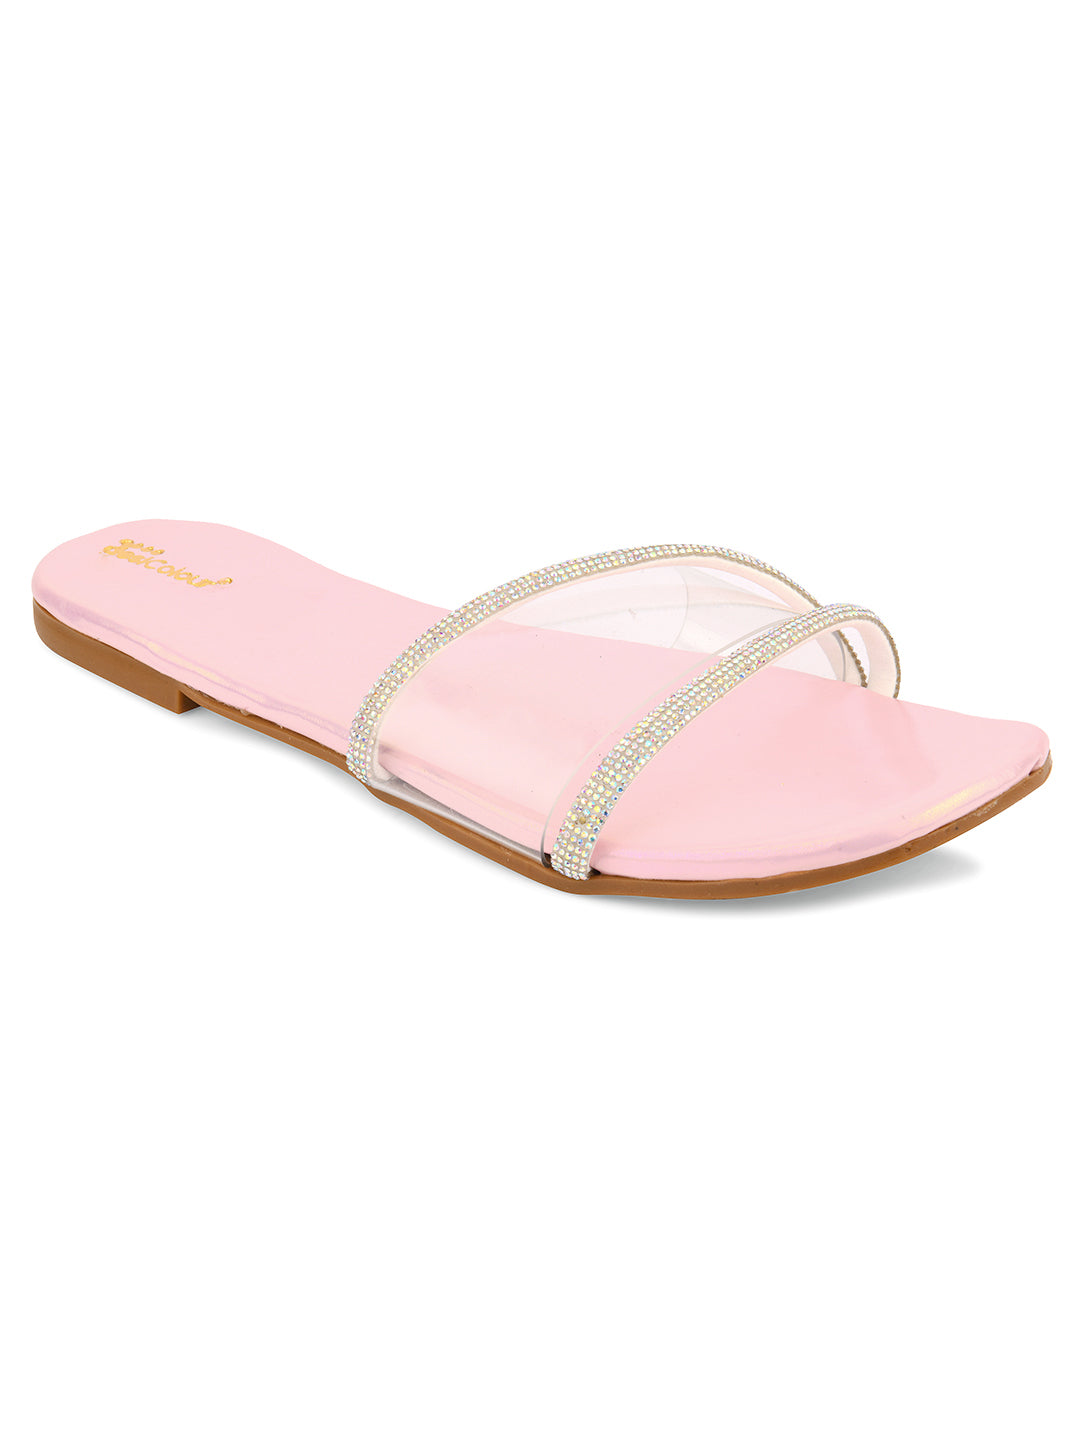 Women's Pink Sliders  Indian Ethnic Comfort Footwear - Desi Colour